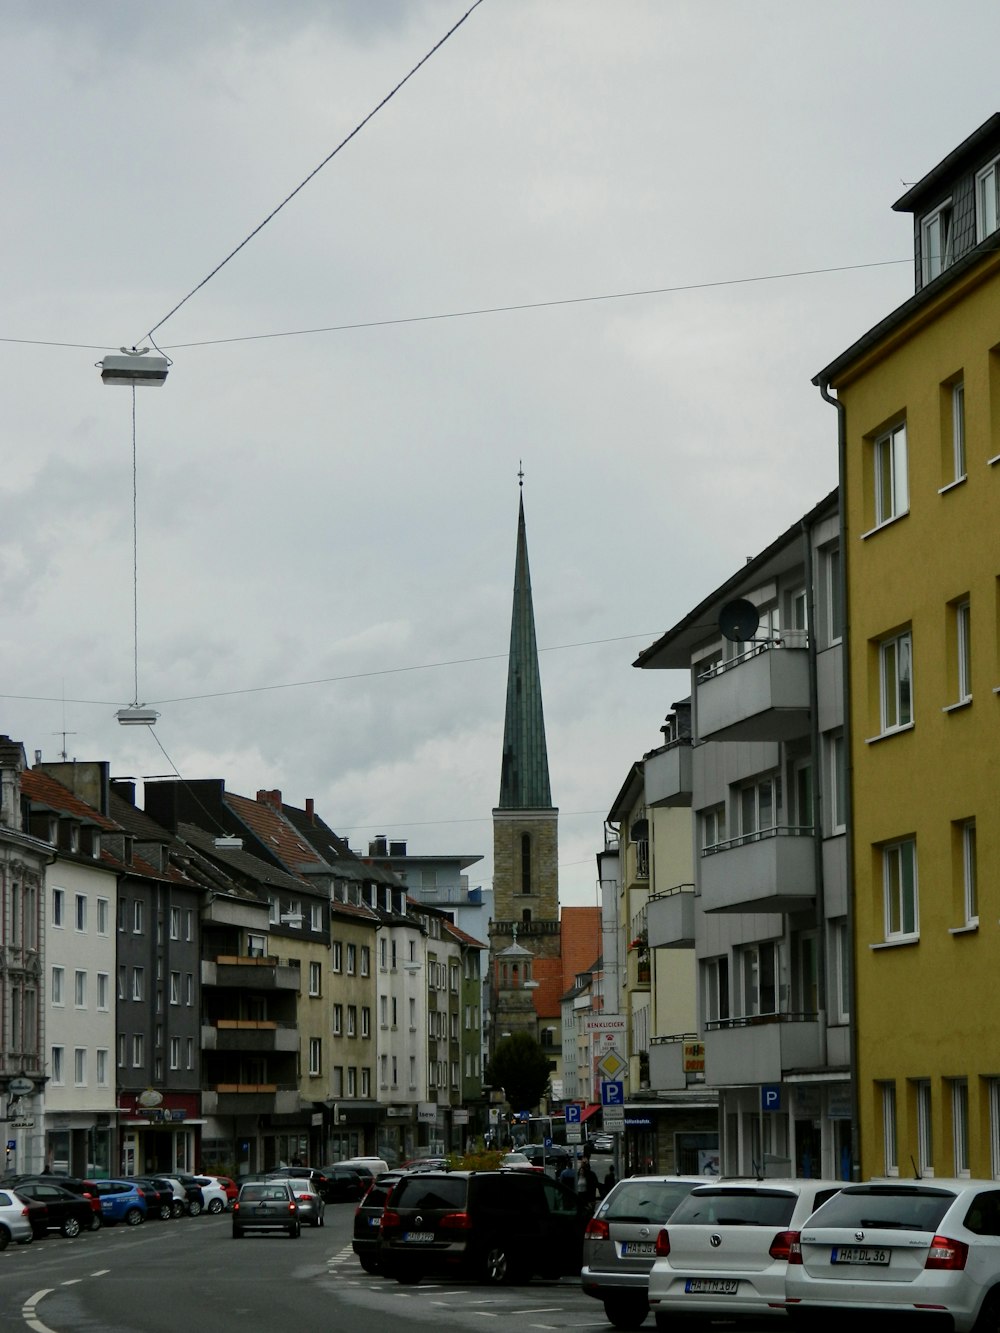 Una strada cittadina con auto e un campanile della chiesa sullo sfondo